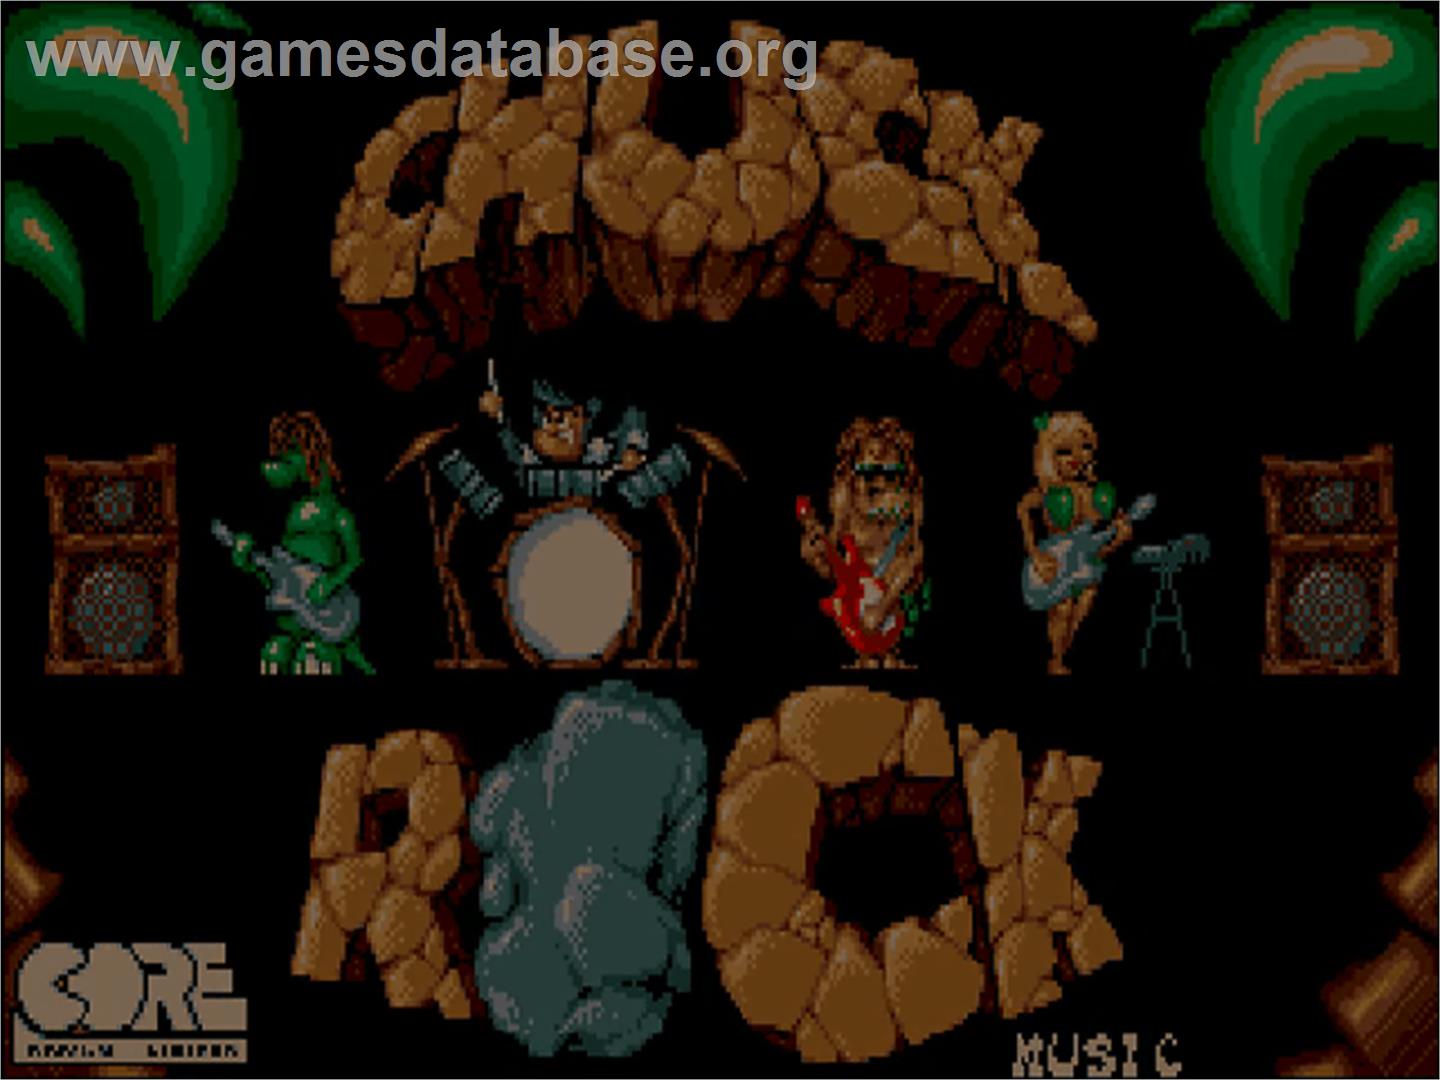 Chuck Rock - Commodore Amiga CD32 - Artwork - Title Screen